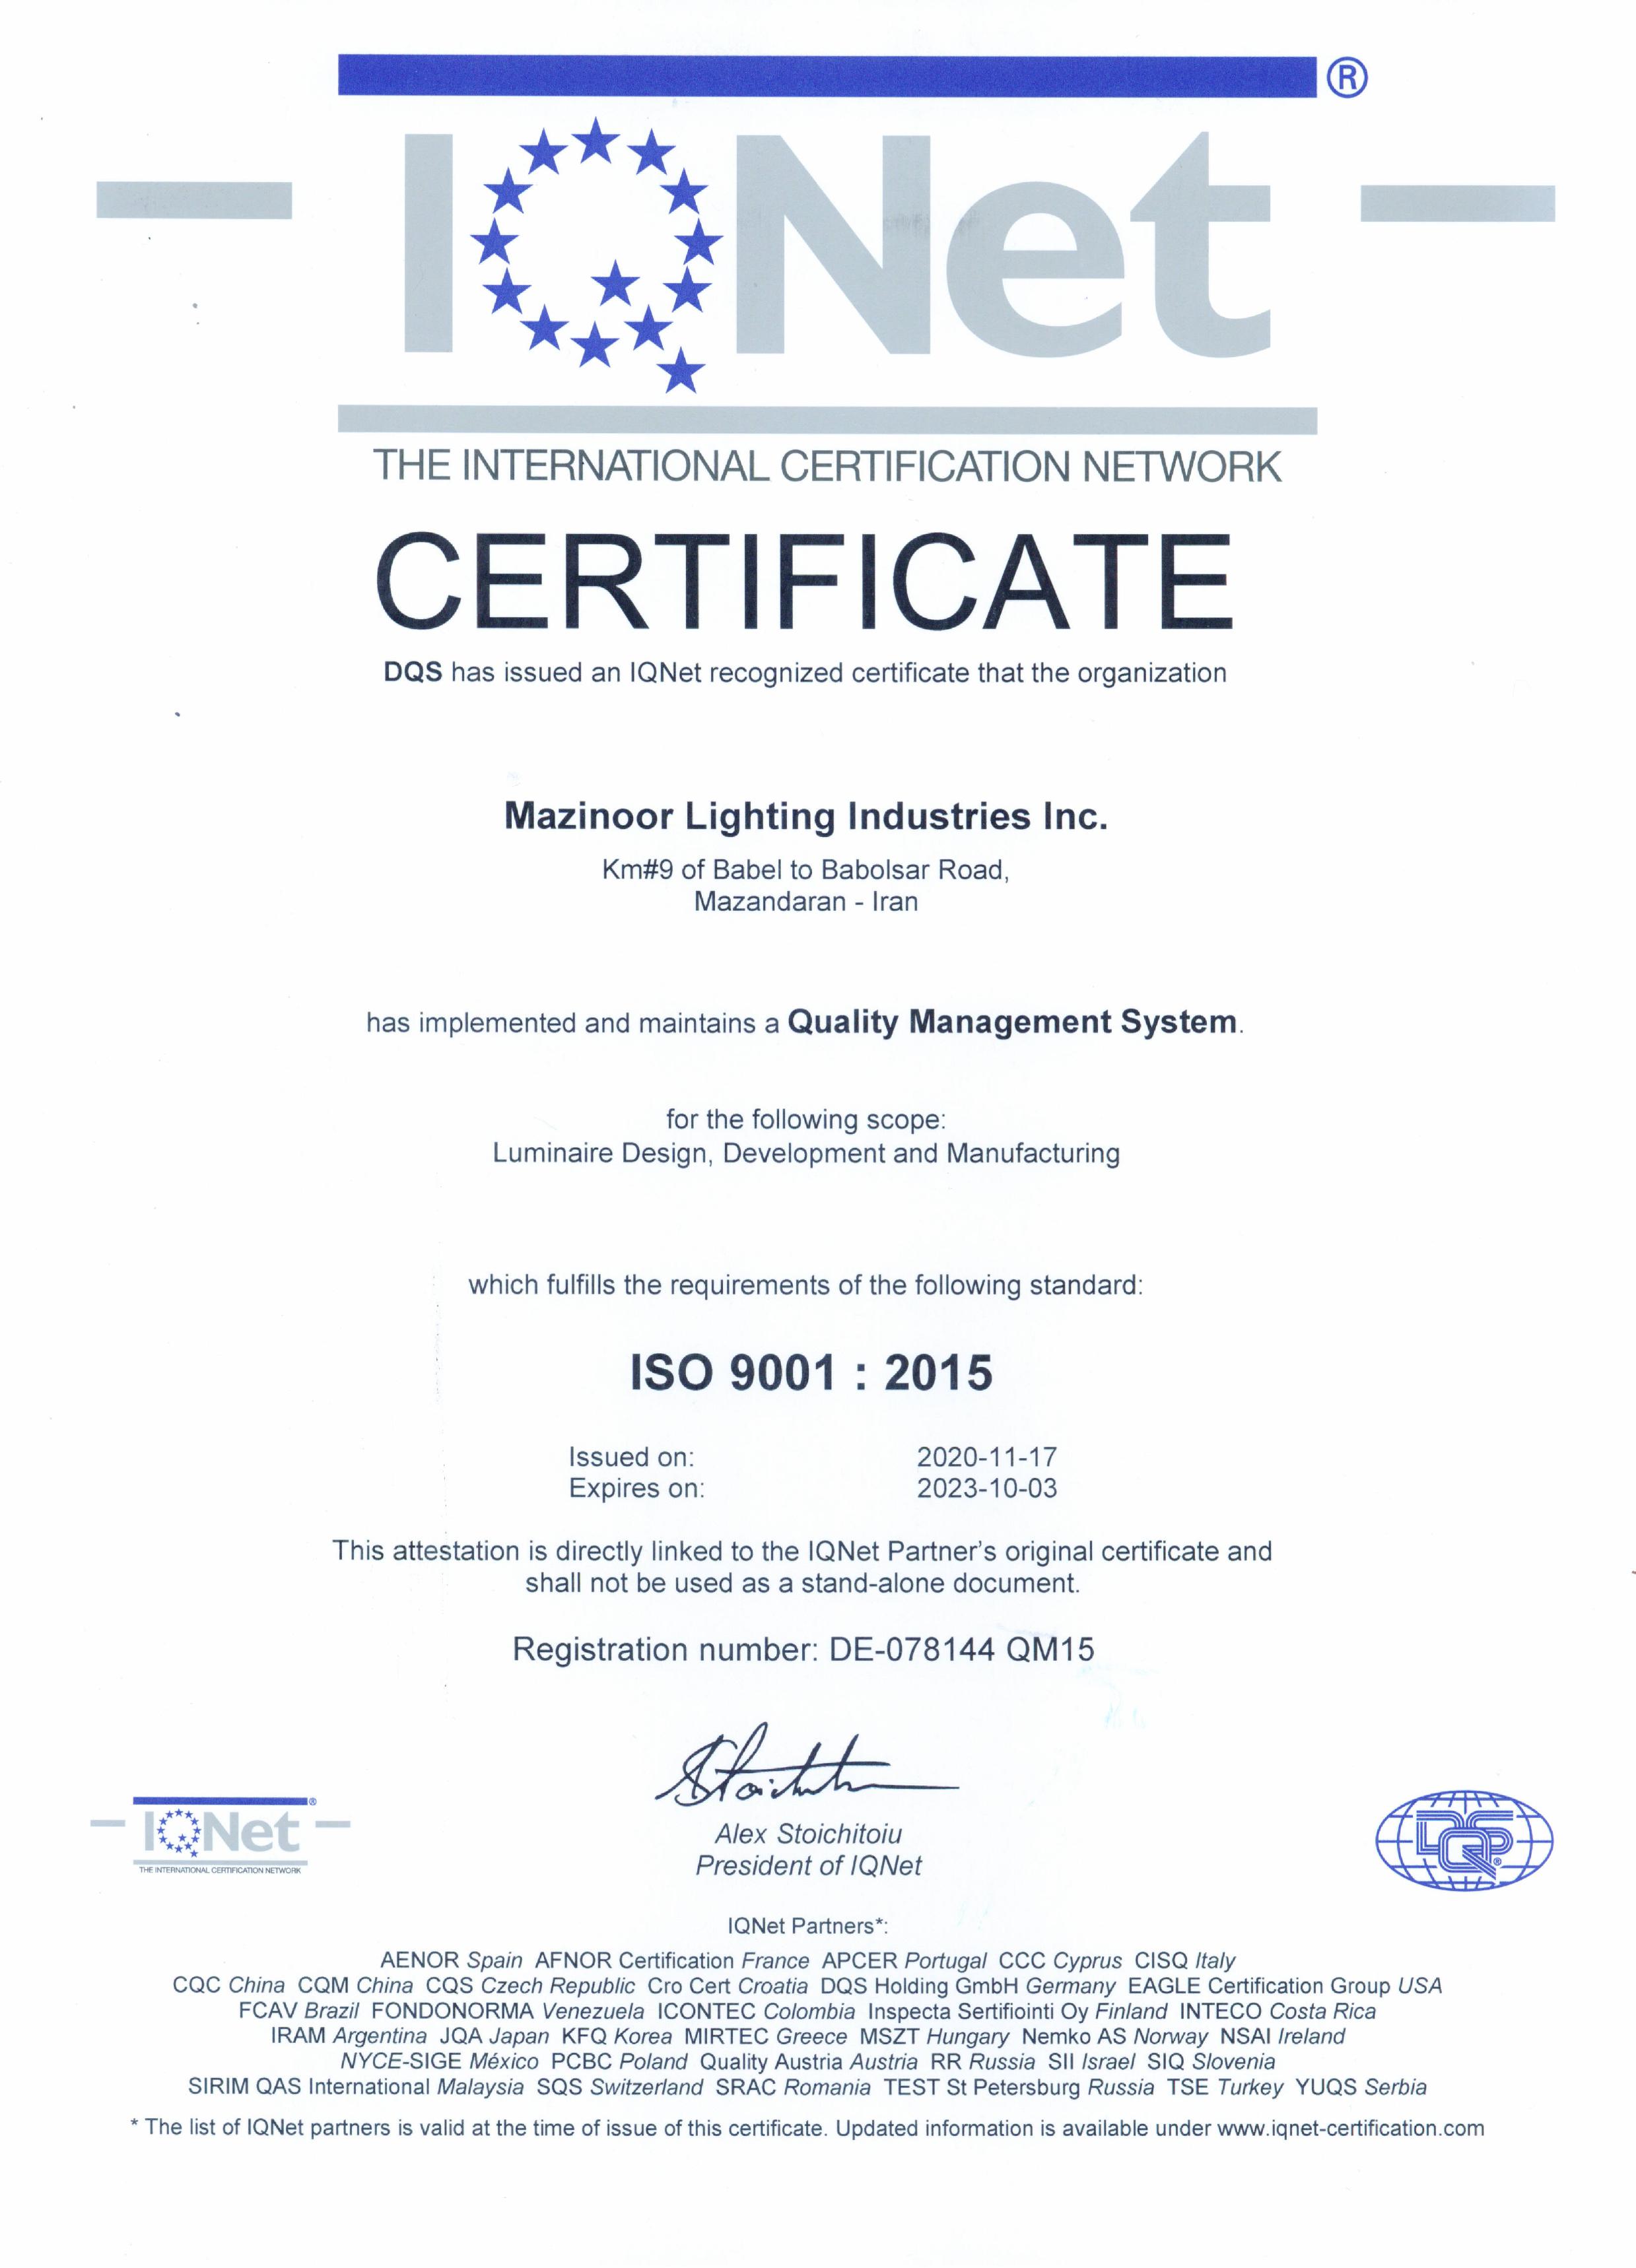 Mazinoor certificates